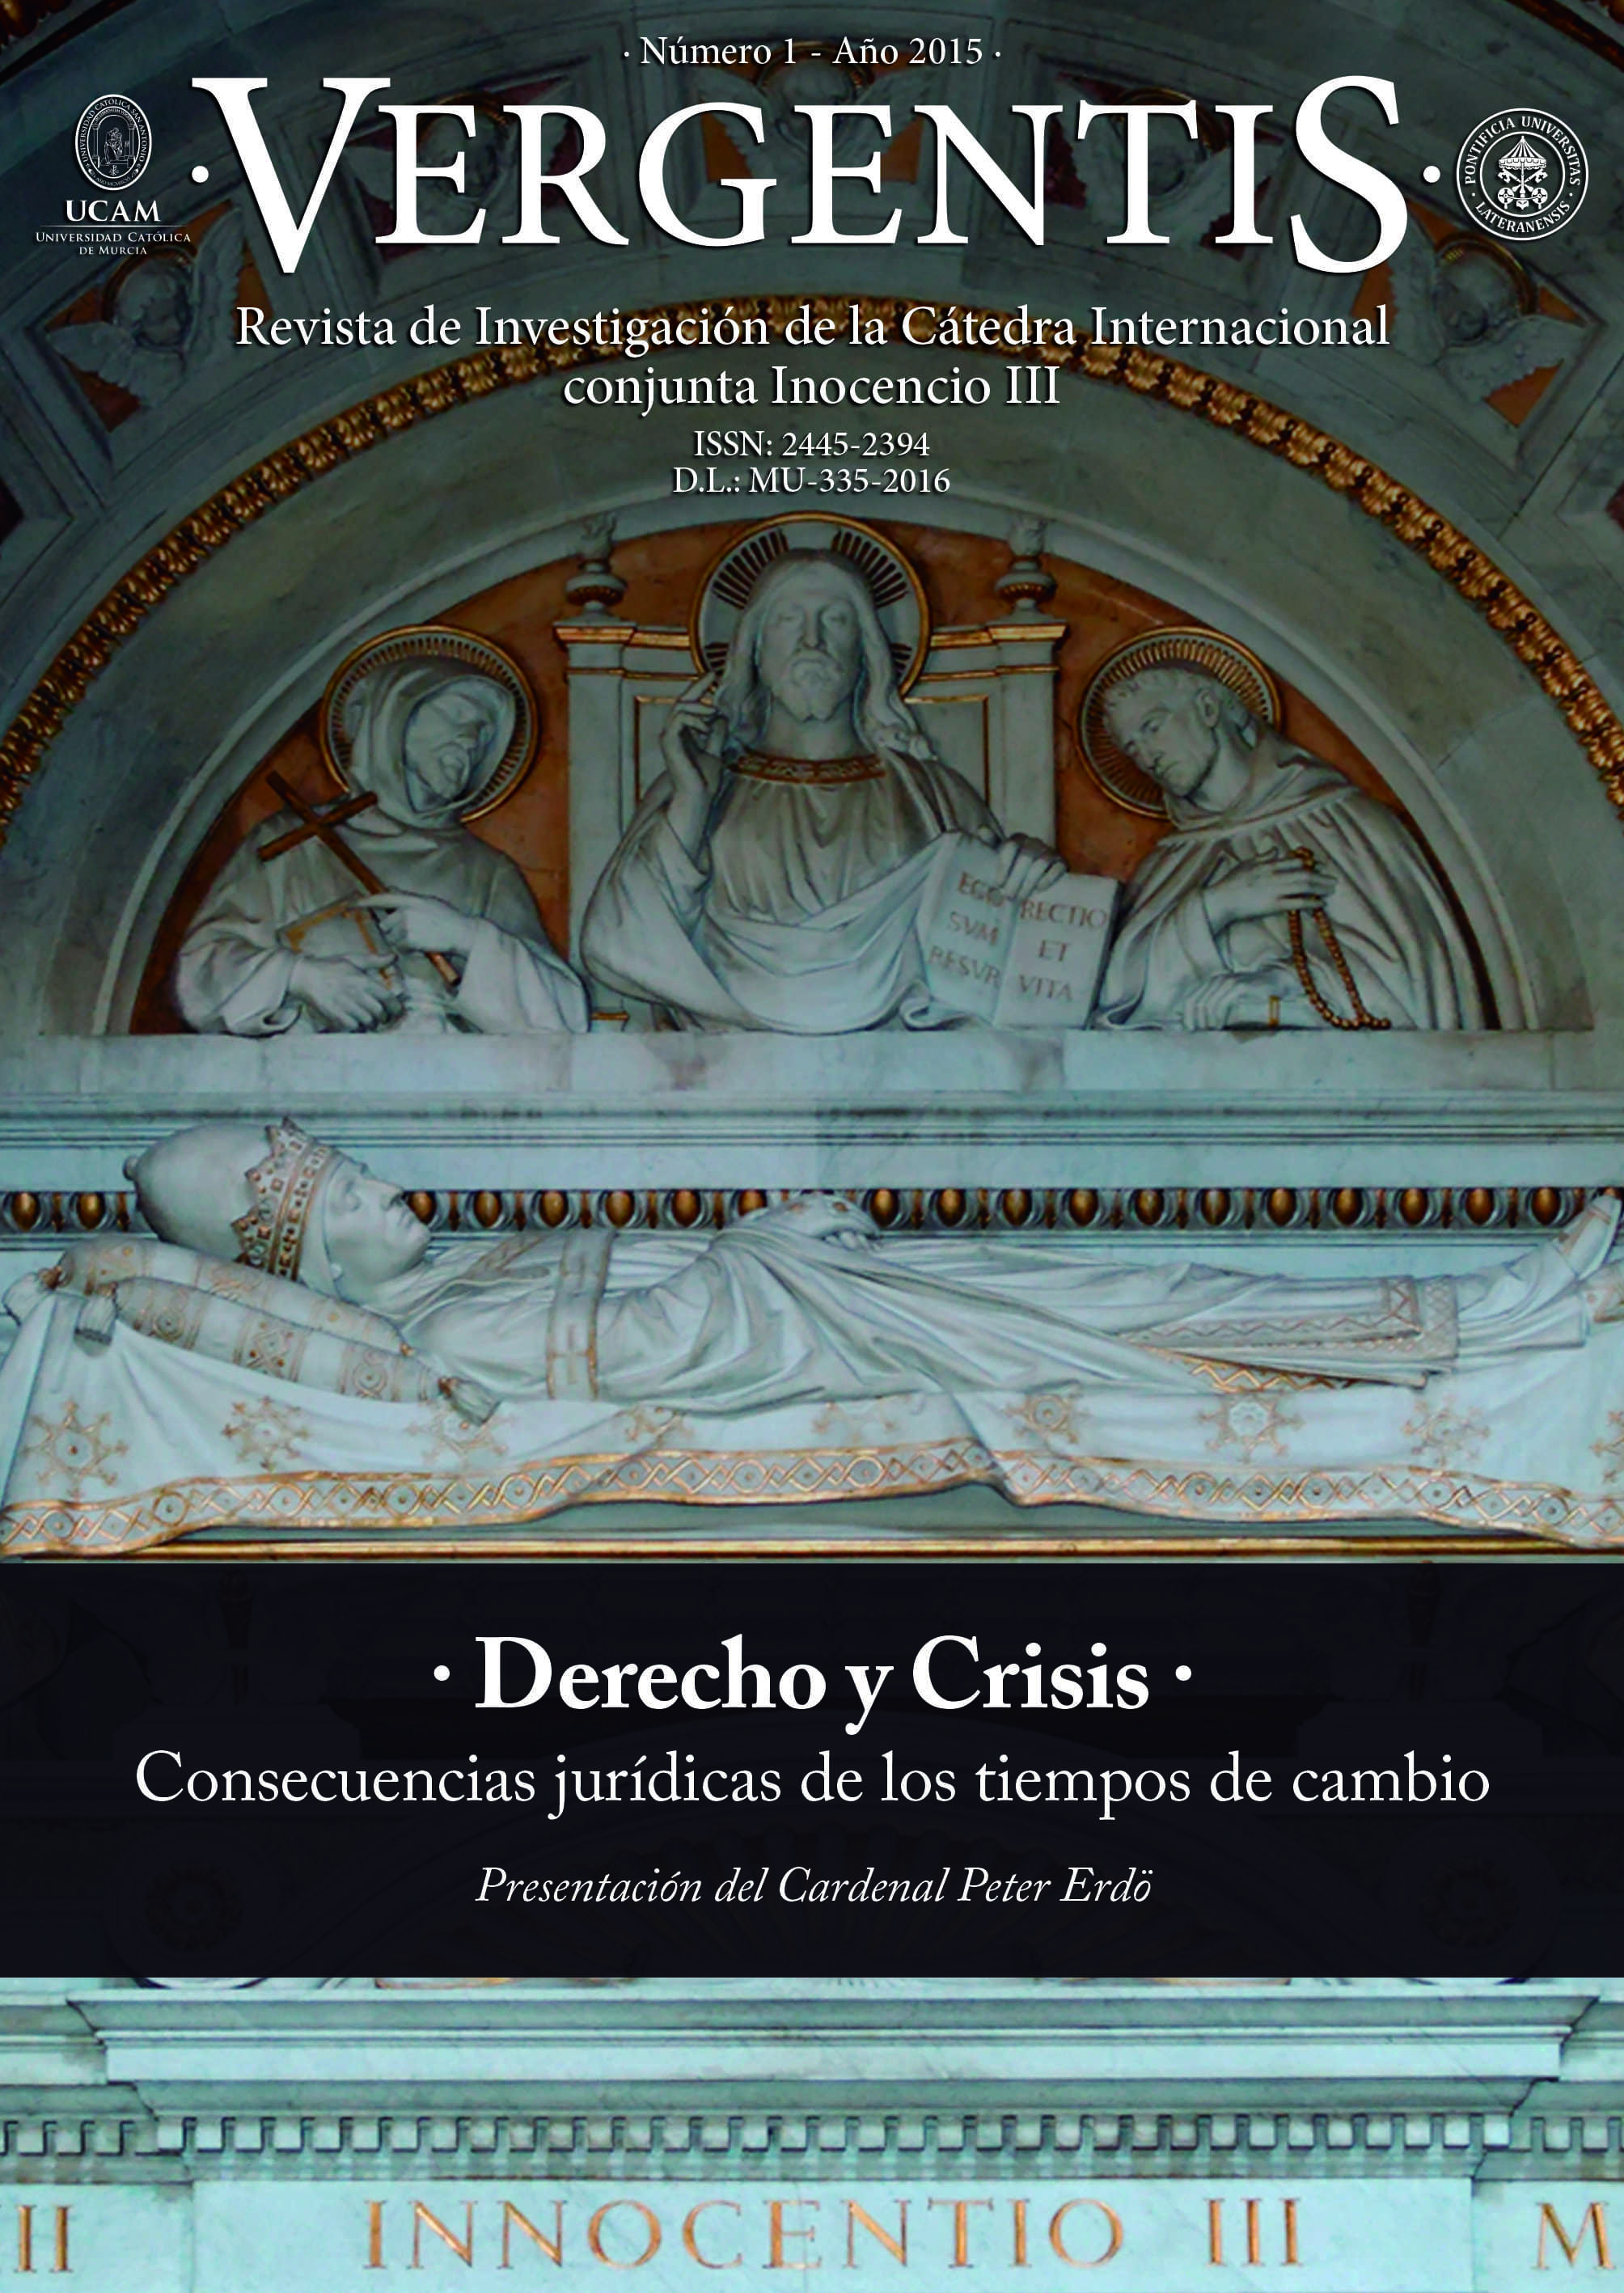 					View Vol. 1 No. 1 (2015): Vergentis. Revista de Investigación de la Cátedra Internacional conjunta Inocencio III (Julio-Diciembre 2015)
				